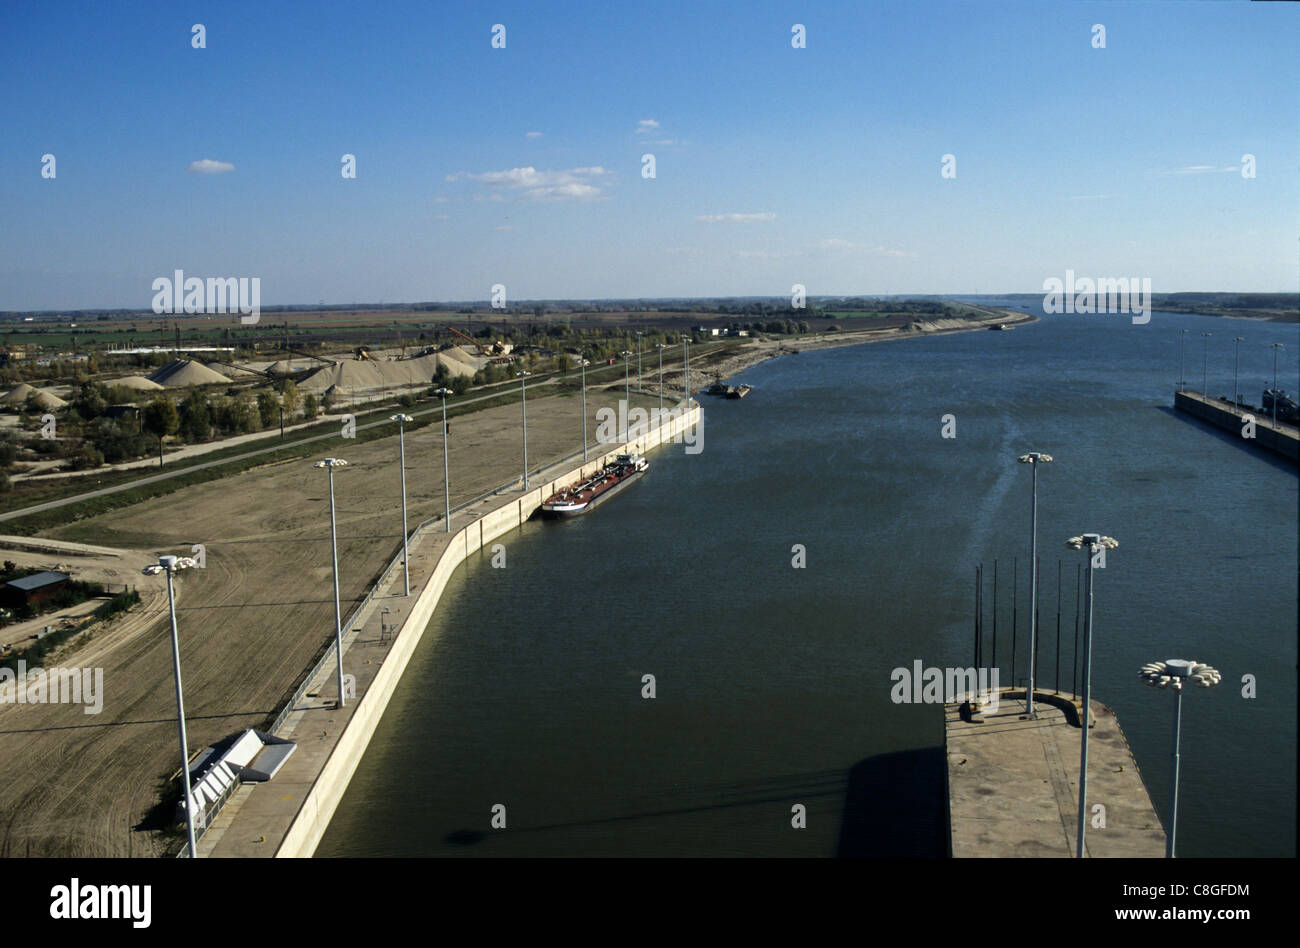 La Slovacchia: Gabcikovo la diga sul fiume Danubio Foto stock - Alamy